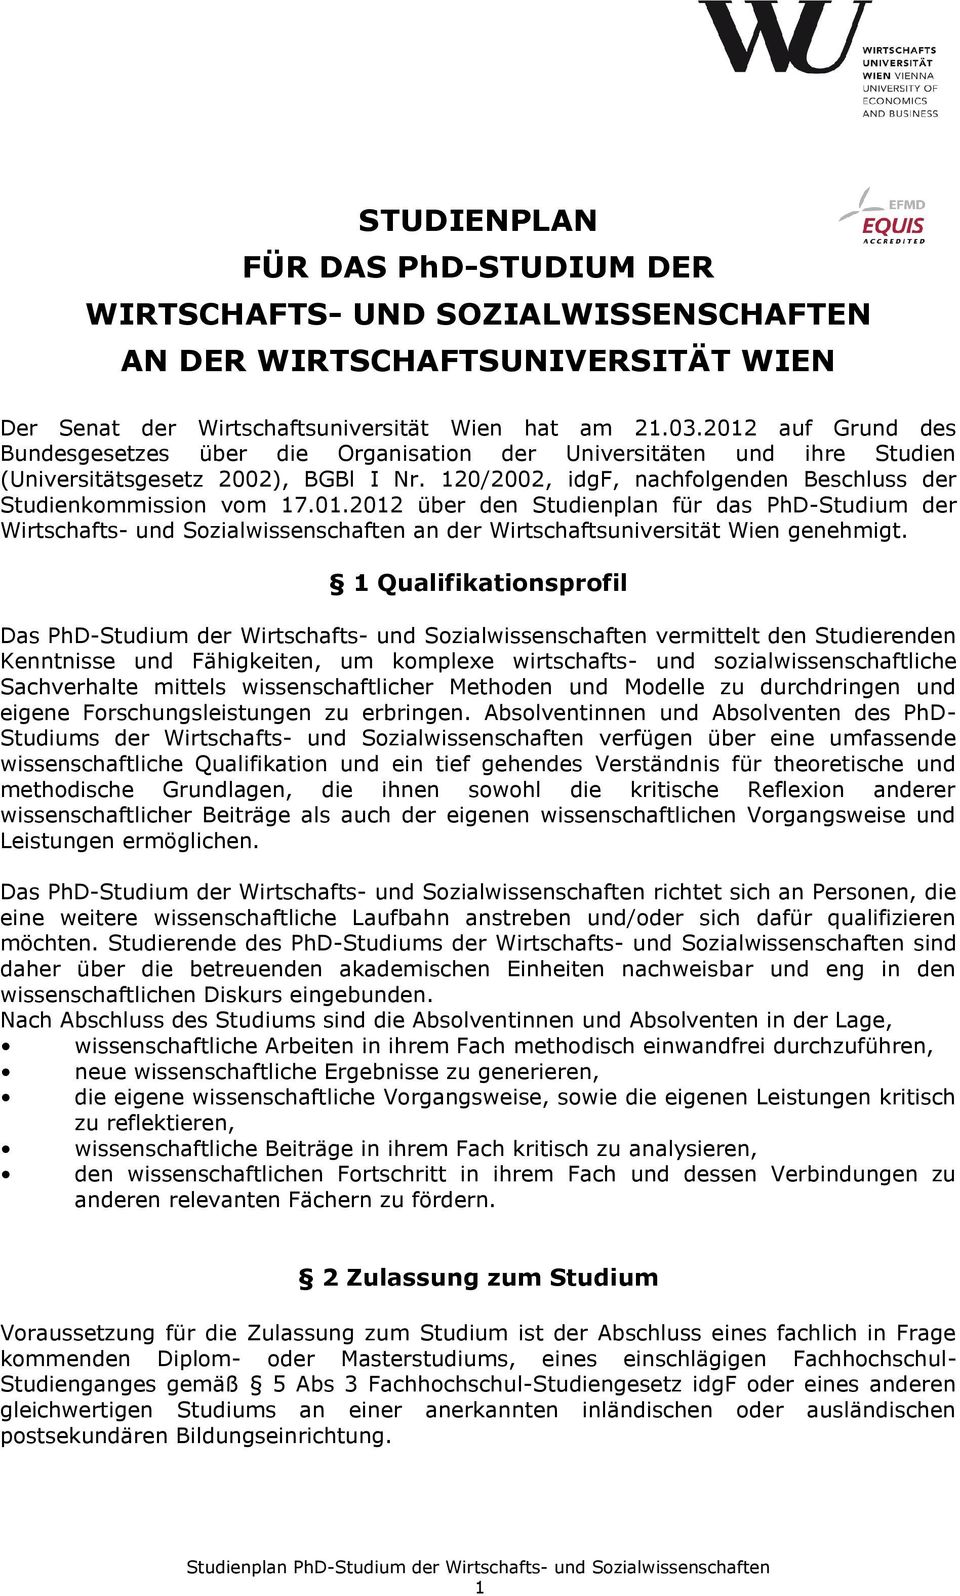 01.2012 über den Studienplan für das PhD-Studium der Wirtschafts- und Sozialwissenschaften an der Wirtschaftsuniversität Wien genehmigt.